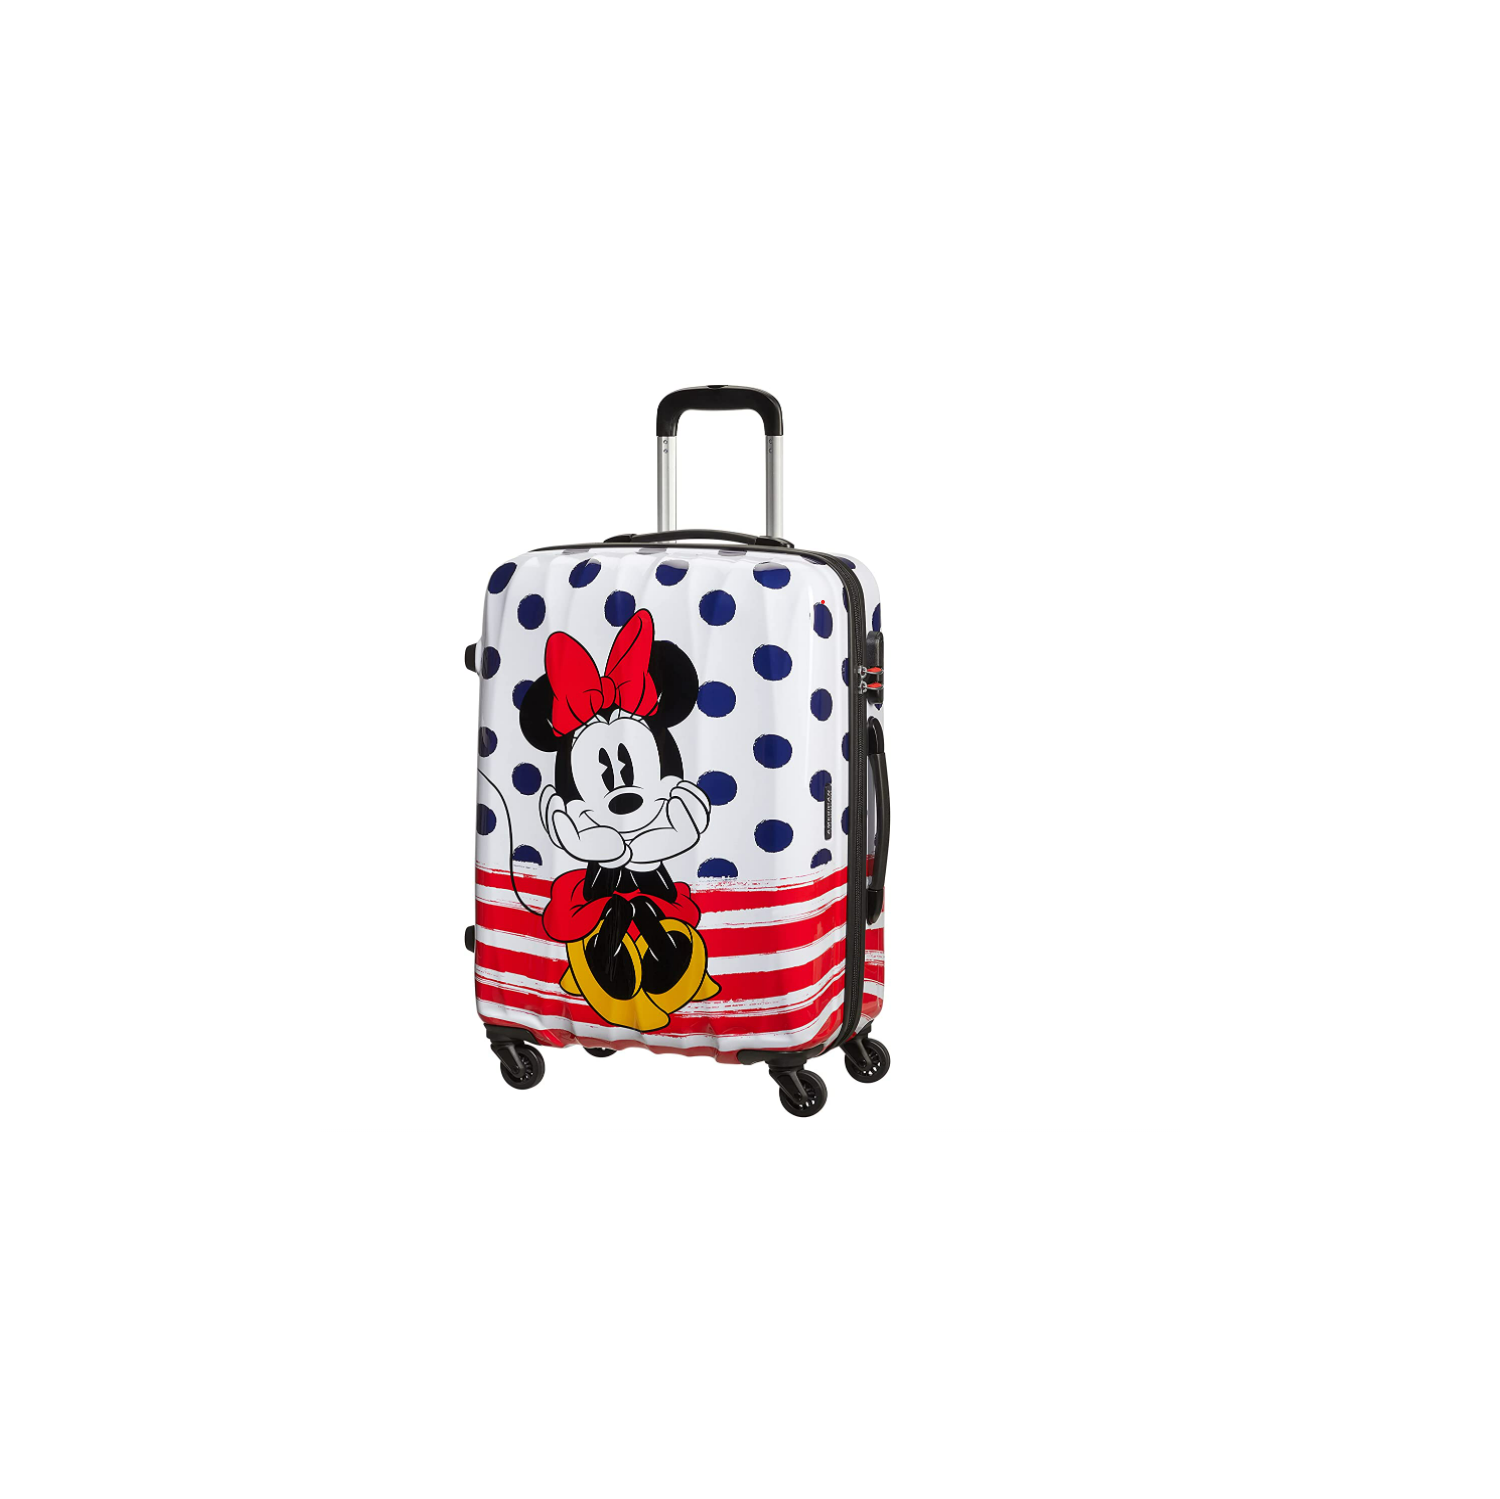 American Tourister Disney Legends Spinner 65 Alfatwist Children's Luggage, 65 cm, Minnie Blue Dots, 65 cm, Children's Luggage